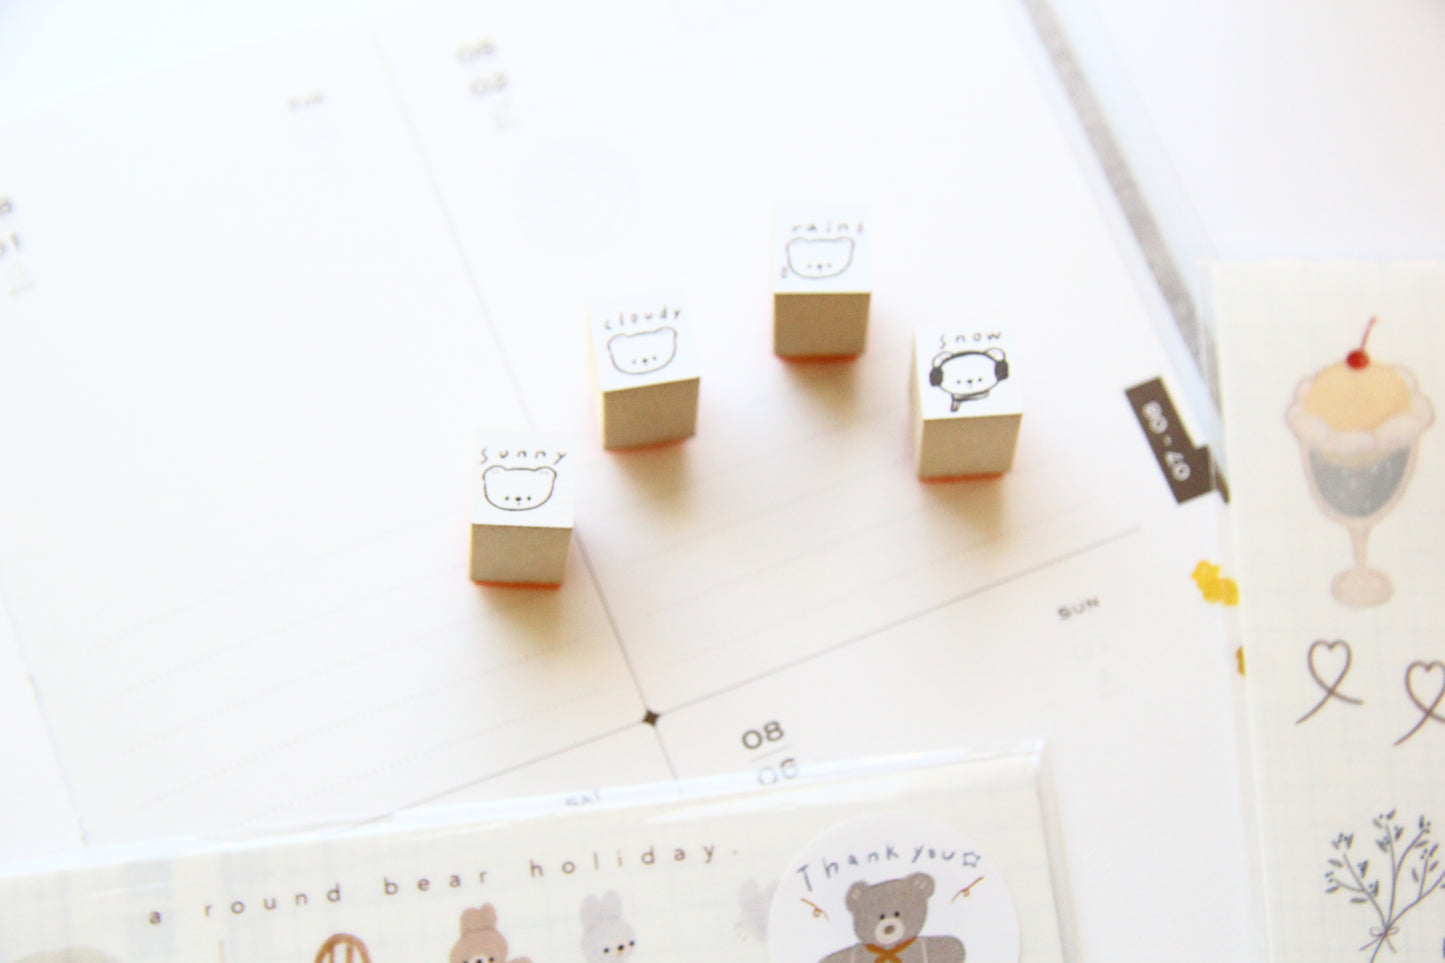 ranmyu Mini Rubber Stamp Set - Weather Set